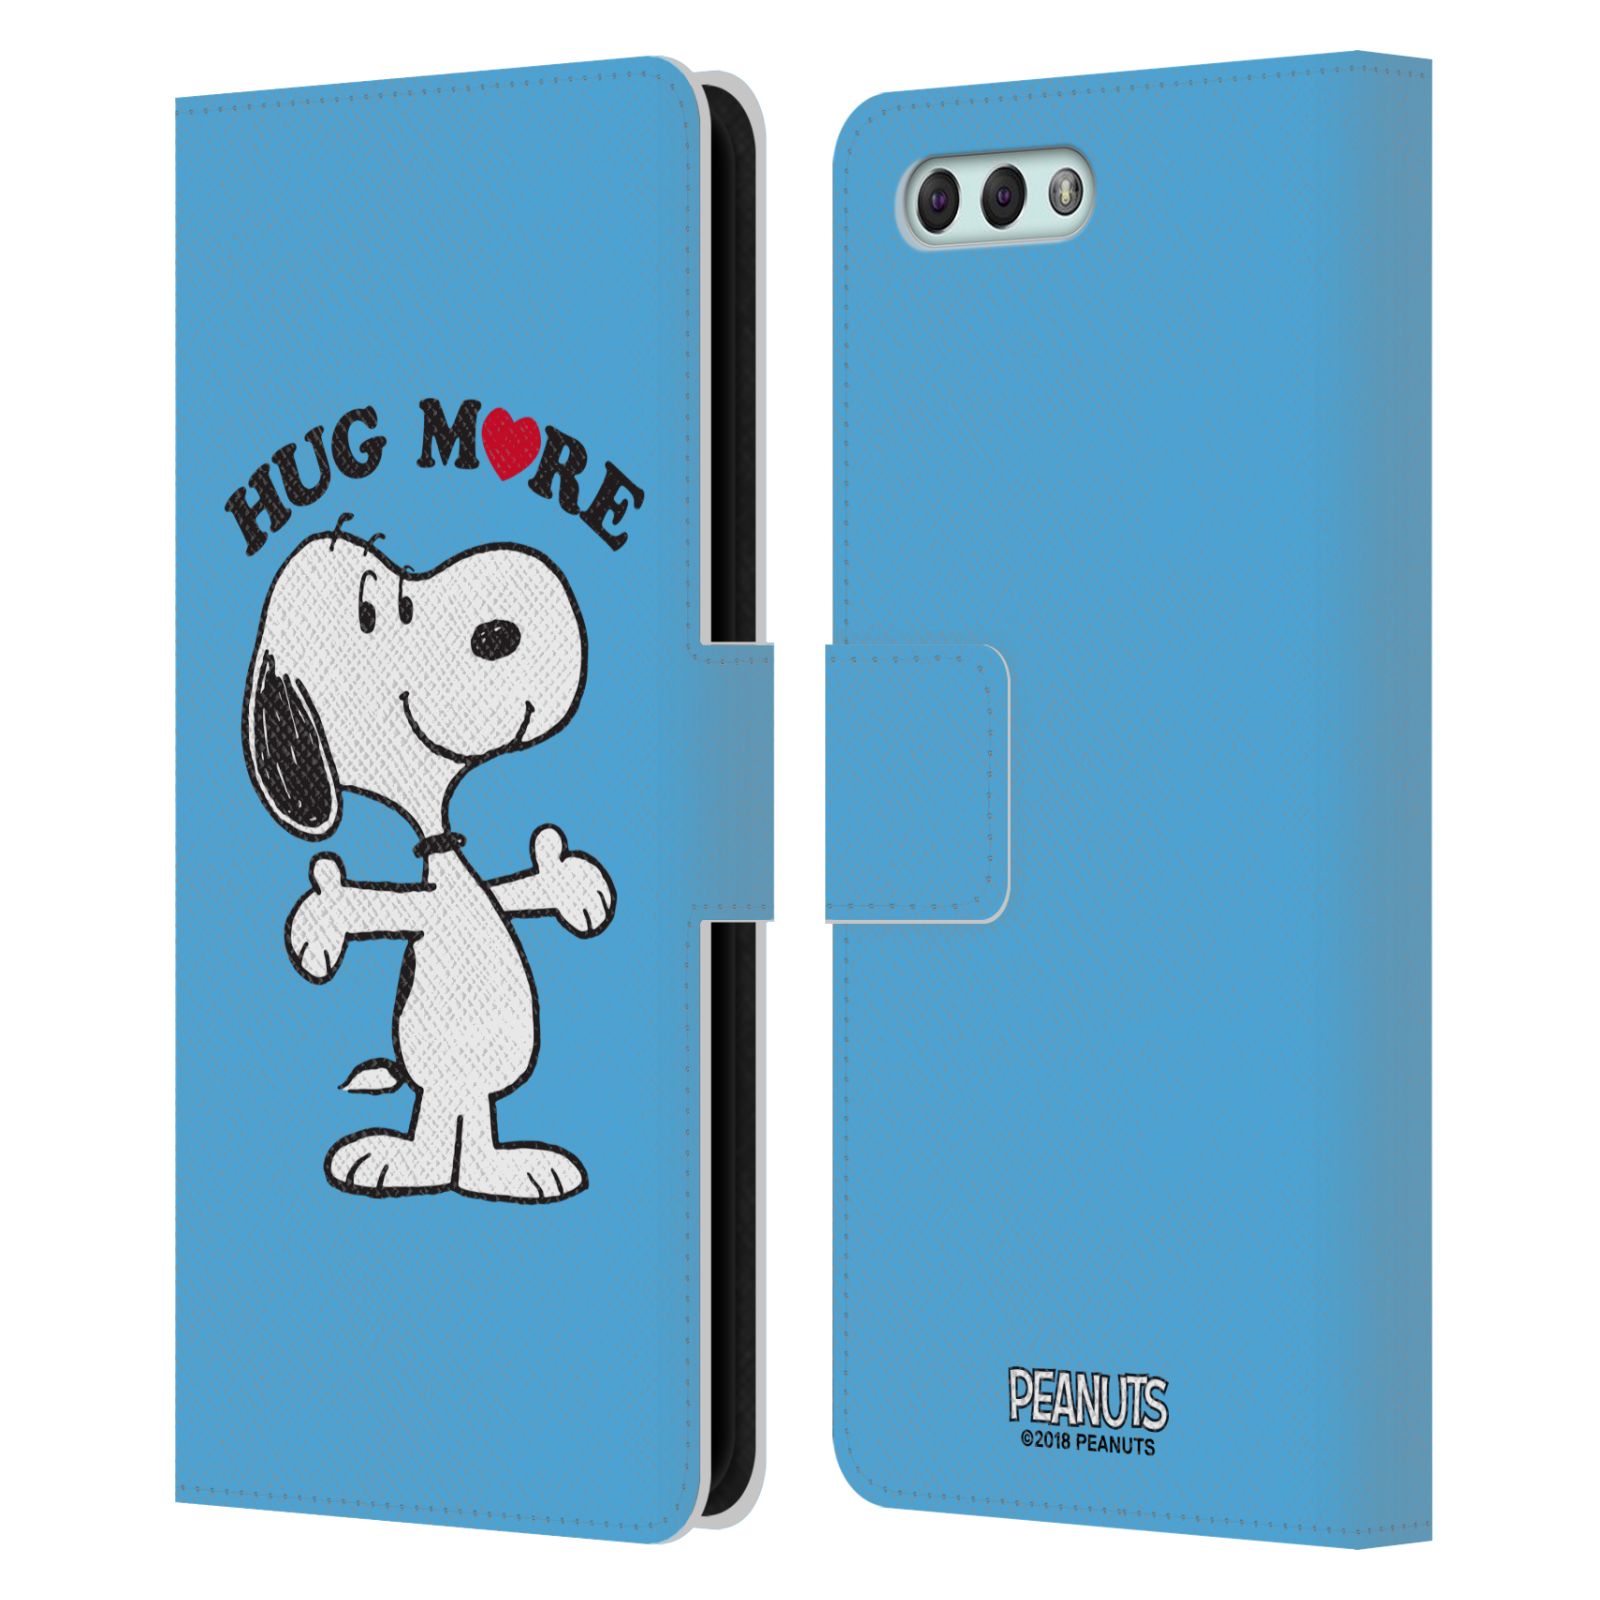 Pouzdro na mobil Asus Zenfone 4 ZE554KL - Head Case - Peanuts - pejsek snoopy světle modré objetí